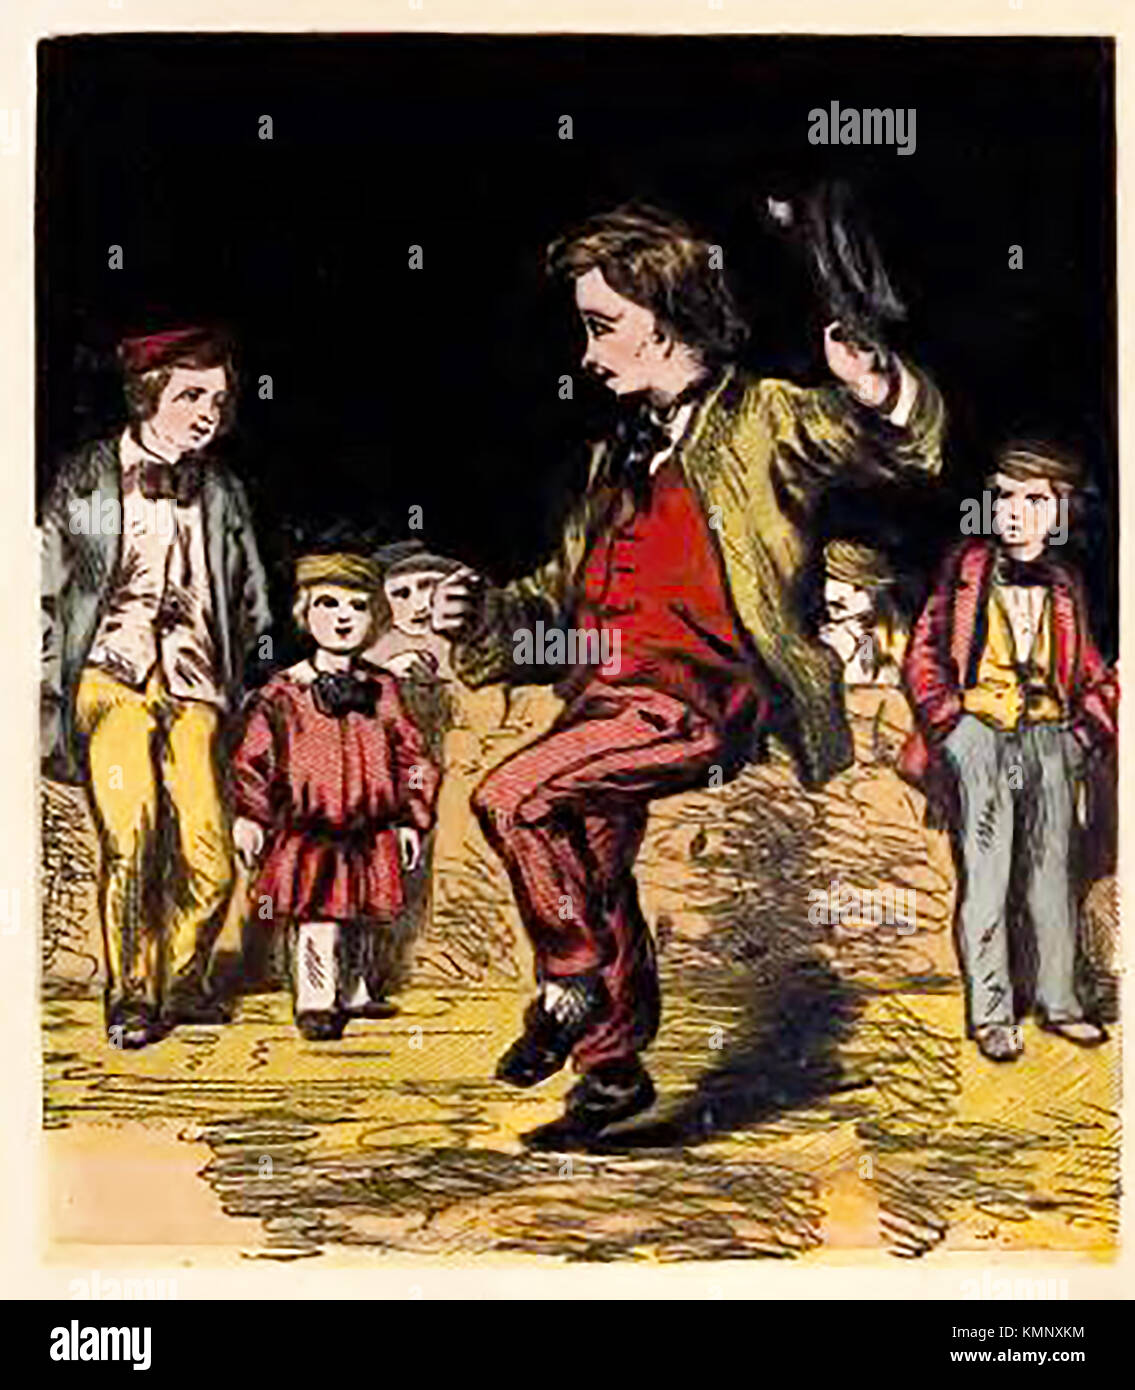 Illustrazione dal Vittoriano per bambini libro colorato di occupazioni e passatempi.: - Street intrattenitore - uomo Vittoriano di danza hornpipe per contanti Foto Stock